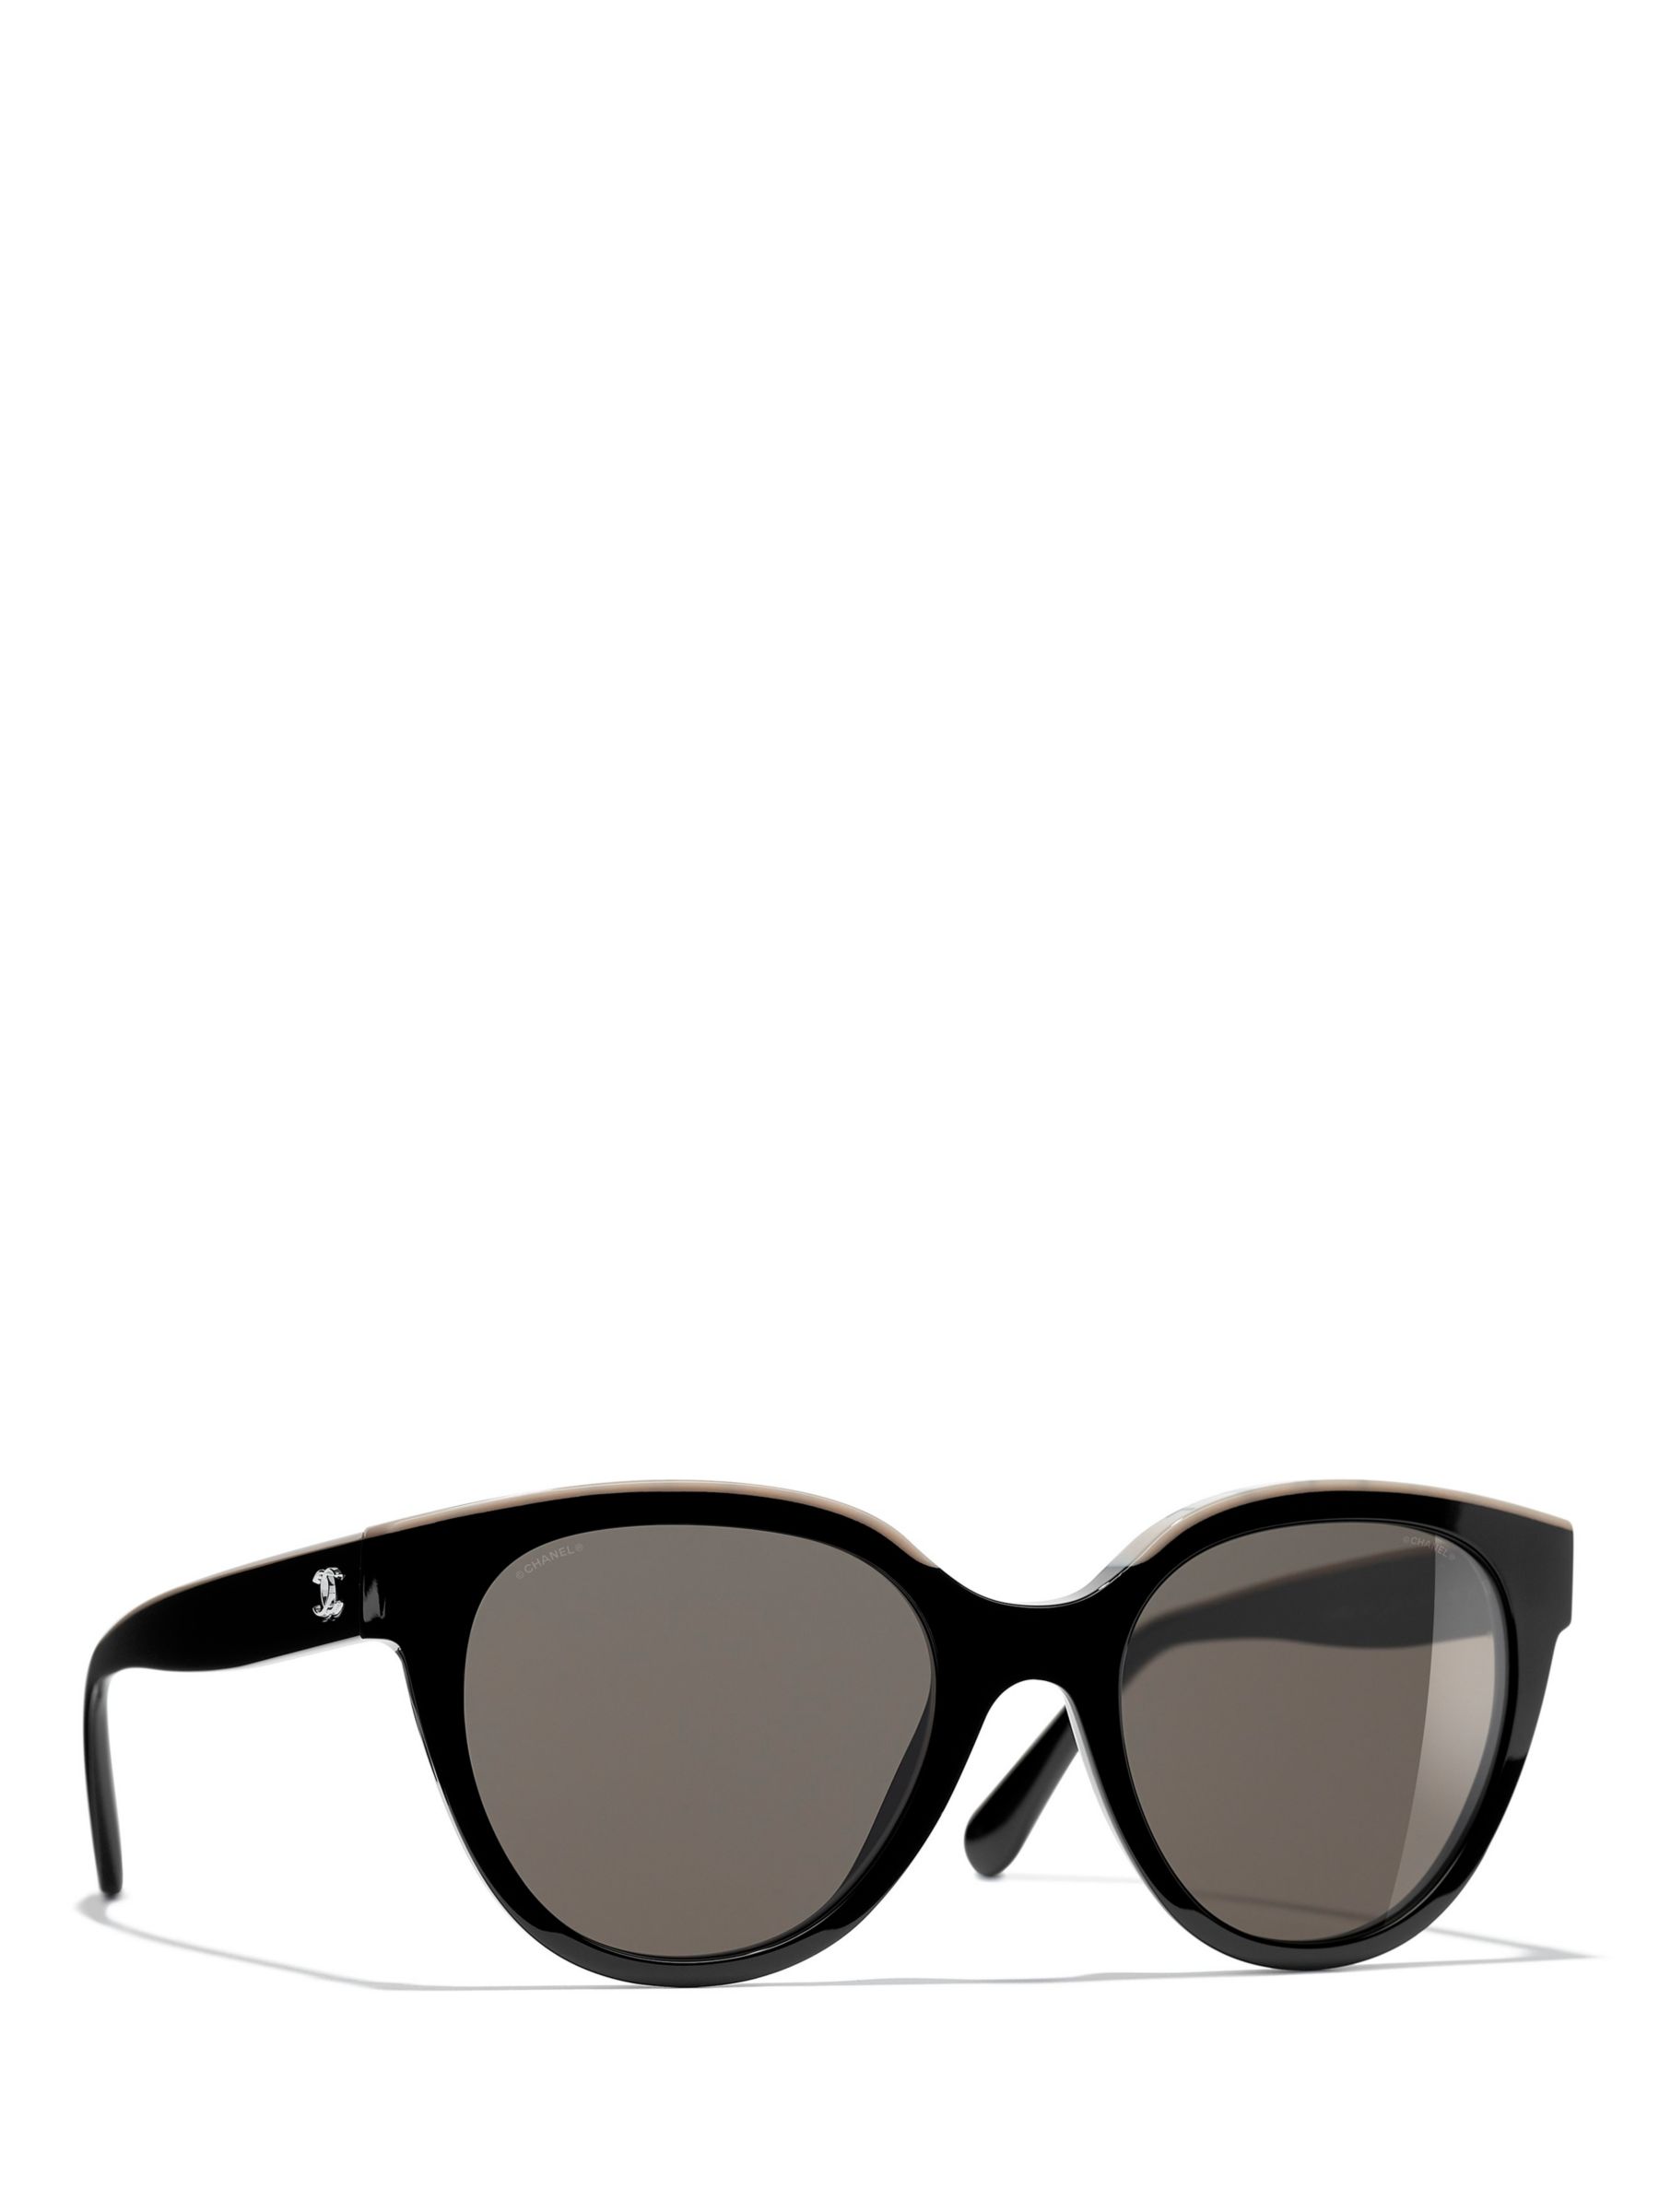 chanel sunglasses square sunglasses polarized